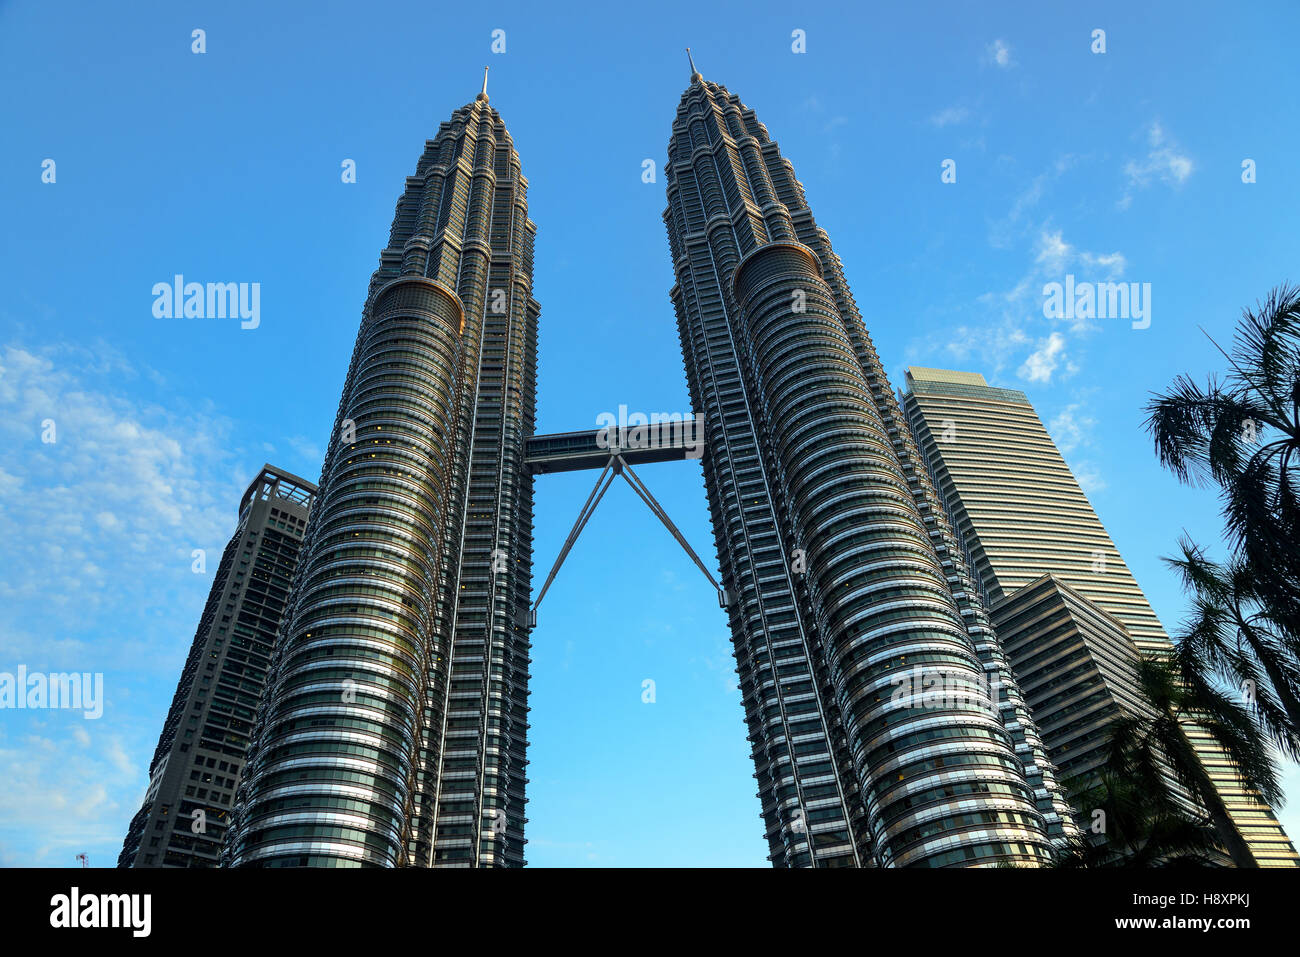 Vista delle Torri Gemelle Petronas. Il grattacielo altezza è di 451.9 m, 88 piani. Kuala Lumpur in Malesia Foto Stock